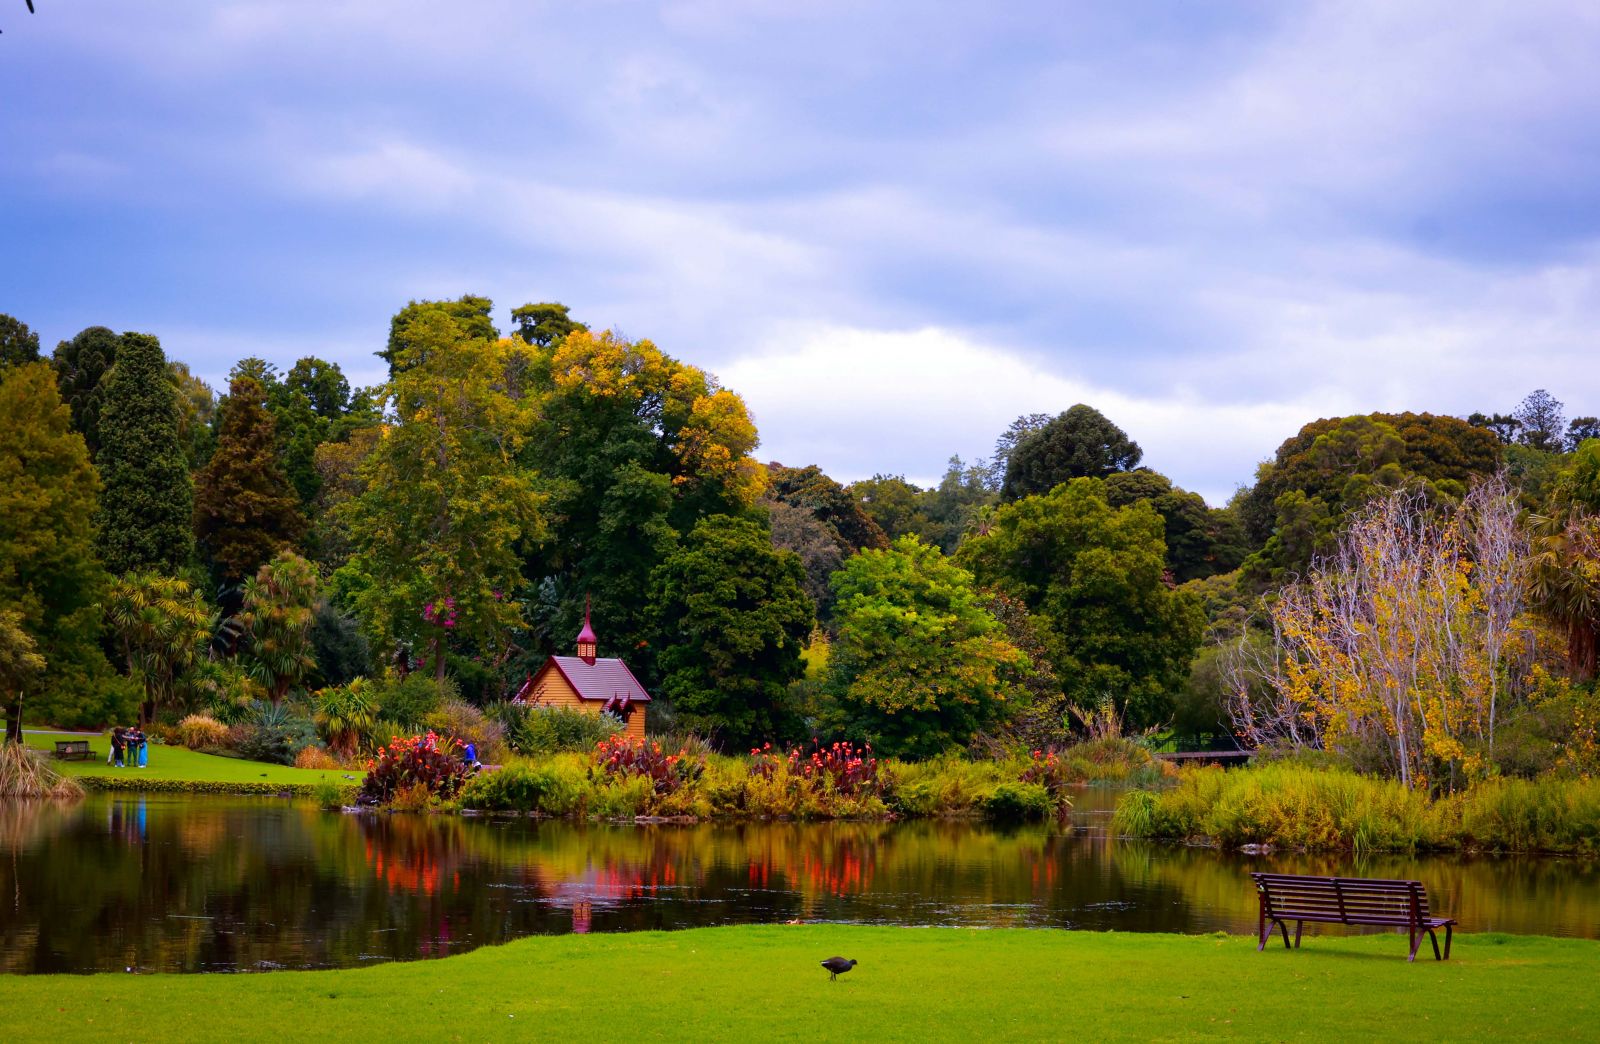 Đến Royal Botanic Garden, du khách ngỡ như được lạc bước vào thế giới cổ tích huyền ảo với hồ nước có tên Guilfoyle Volcano, nơi được bao quanh vẻ đẹp của cây cối, chim, thú và mặt nước phẳng lặng.